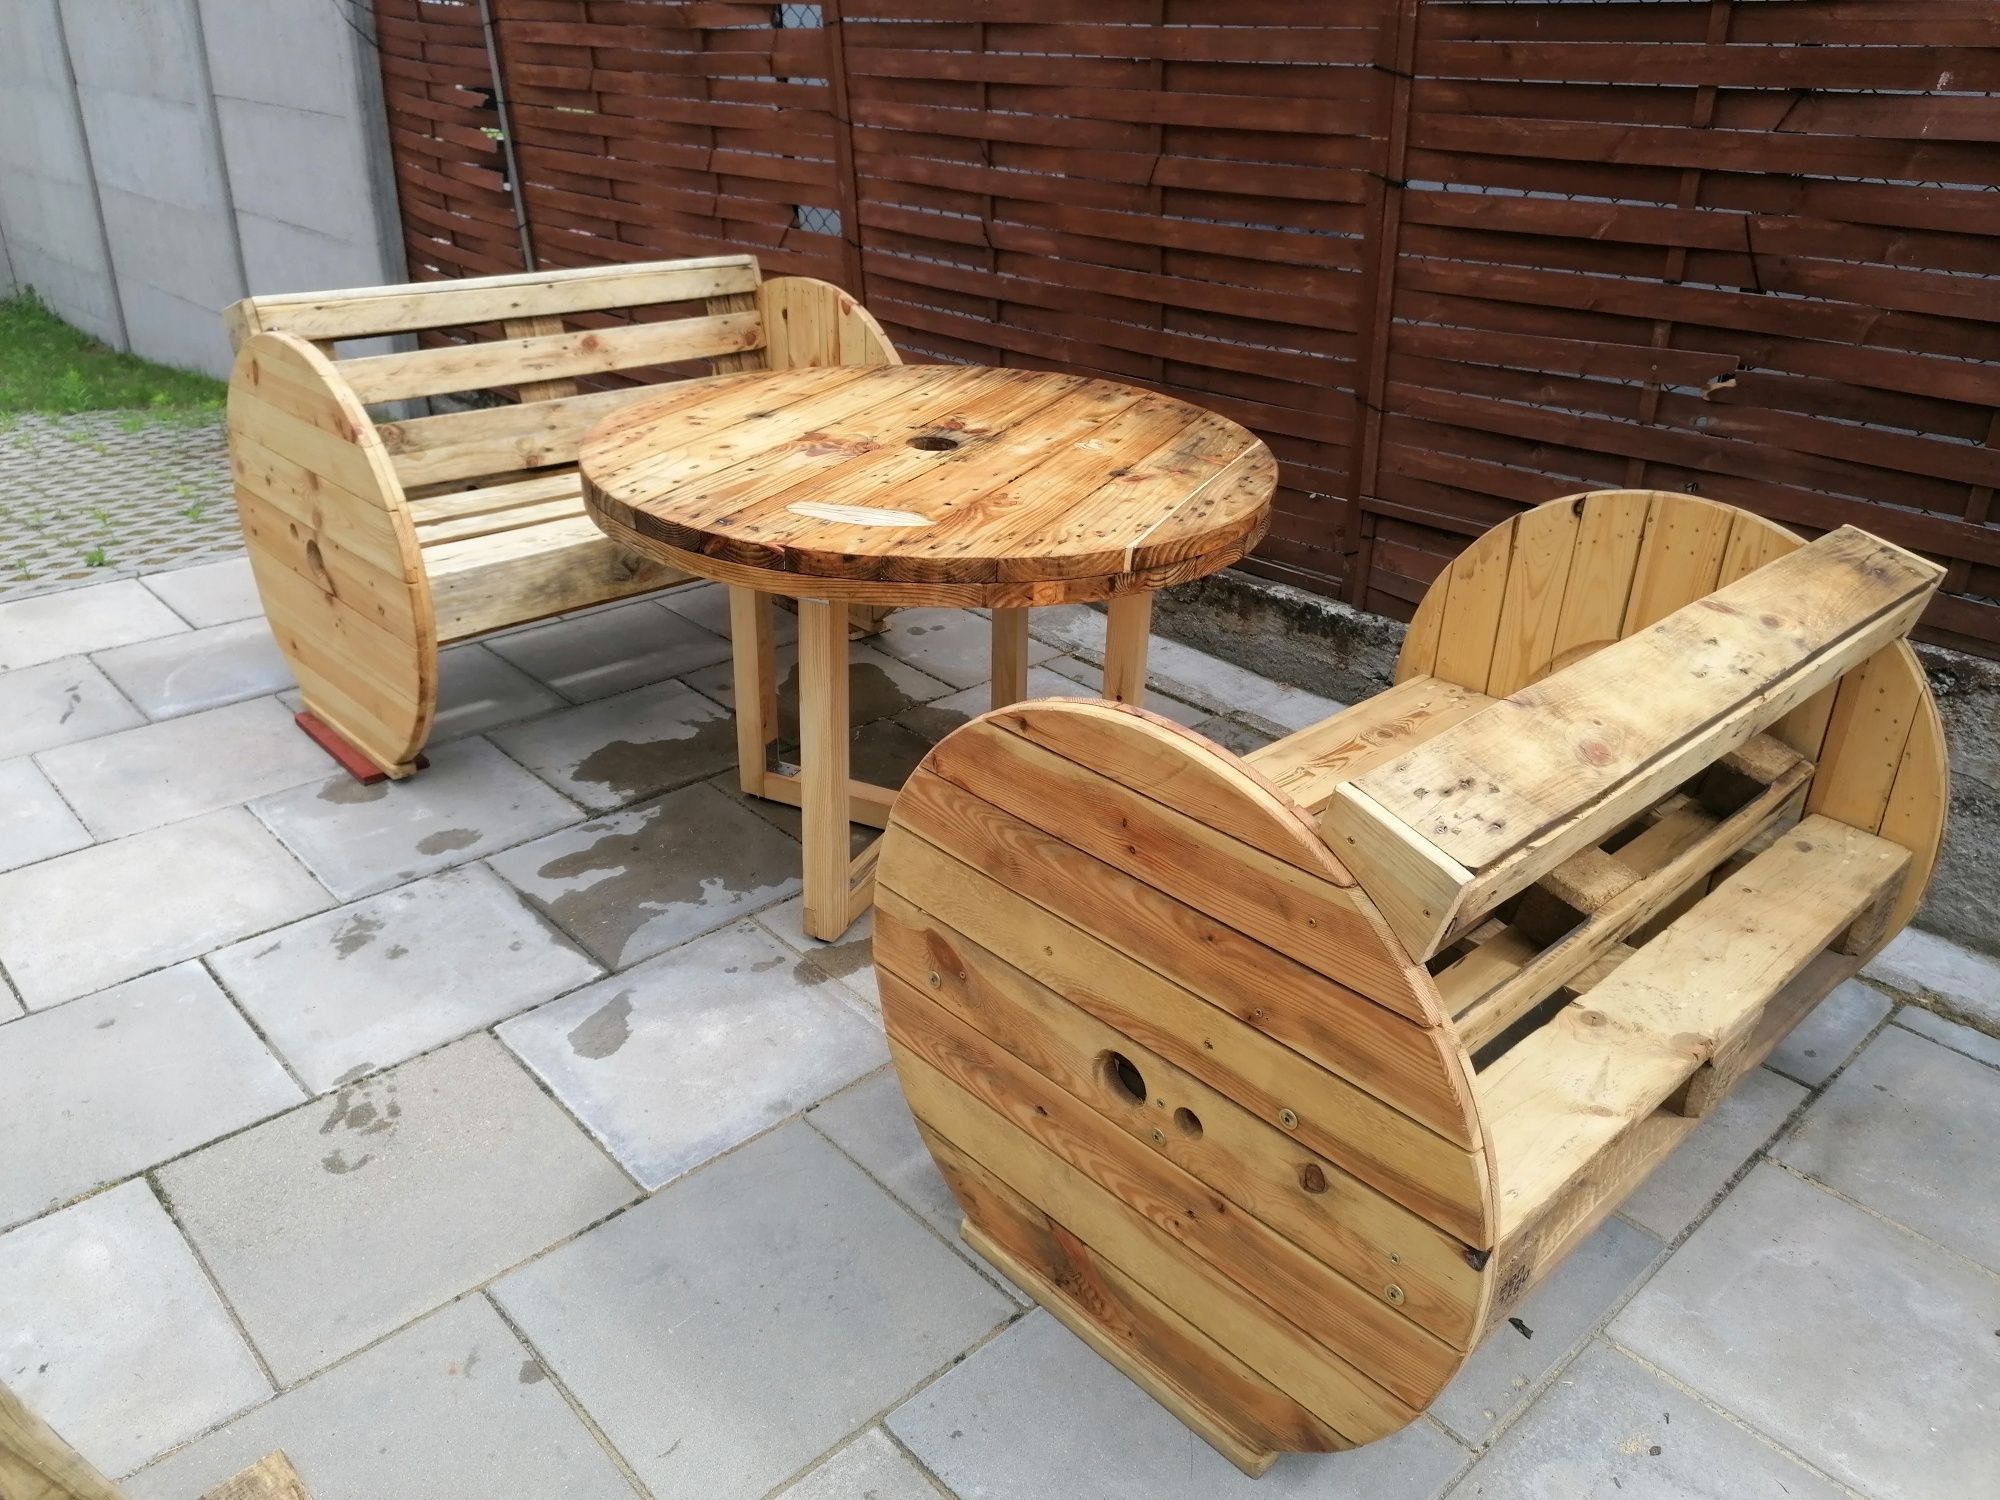 Zestaw ogrodowy dwie ławki + stół